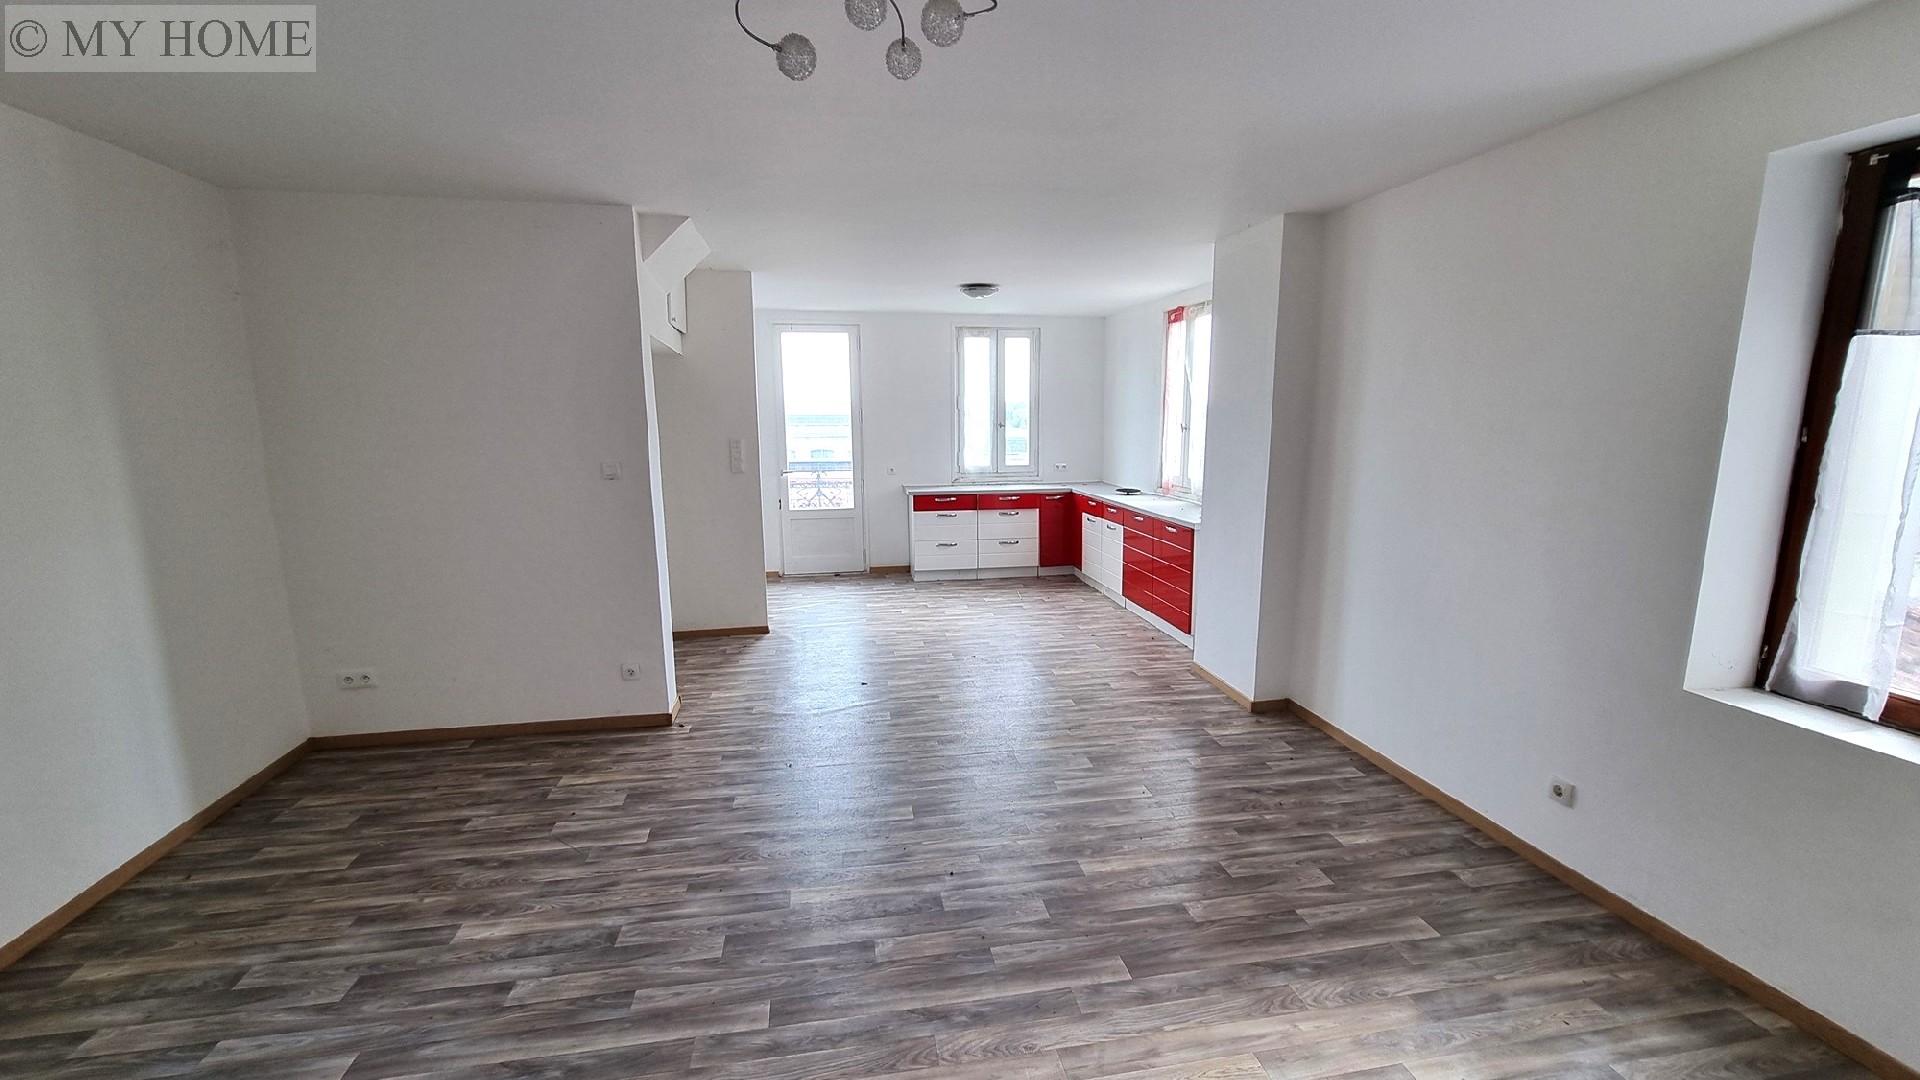 Vente appartement - TOUL 114 m², 3 pièces